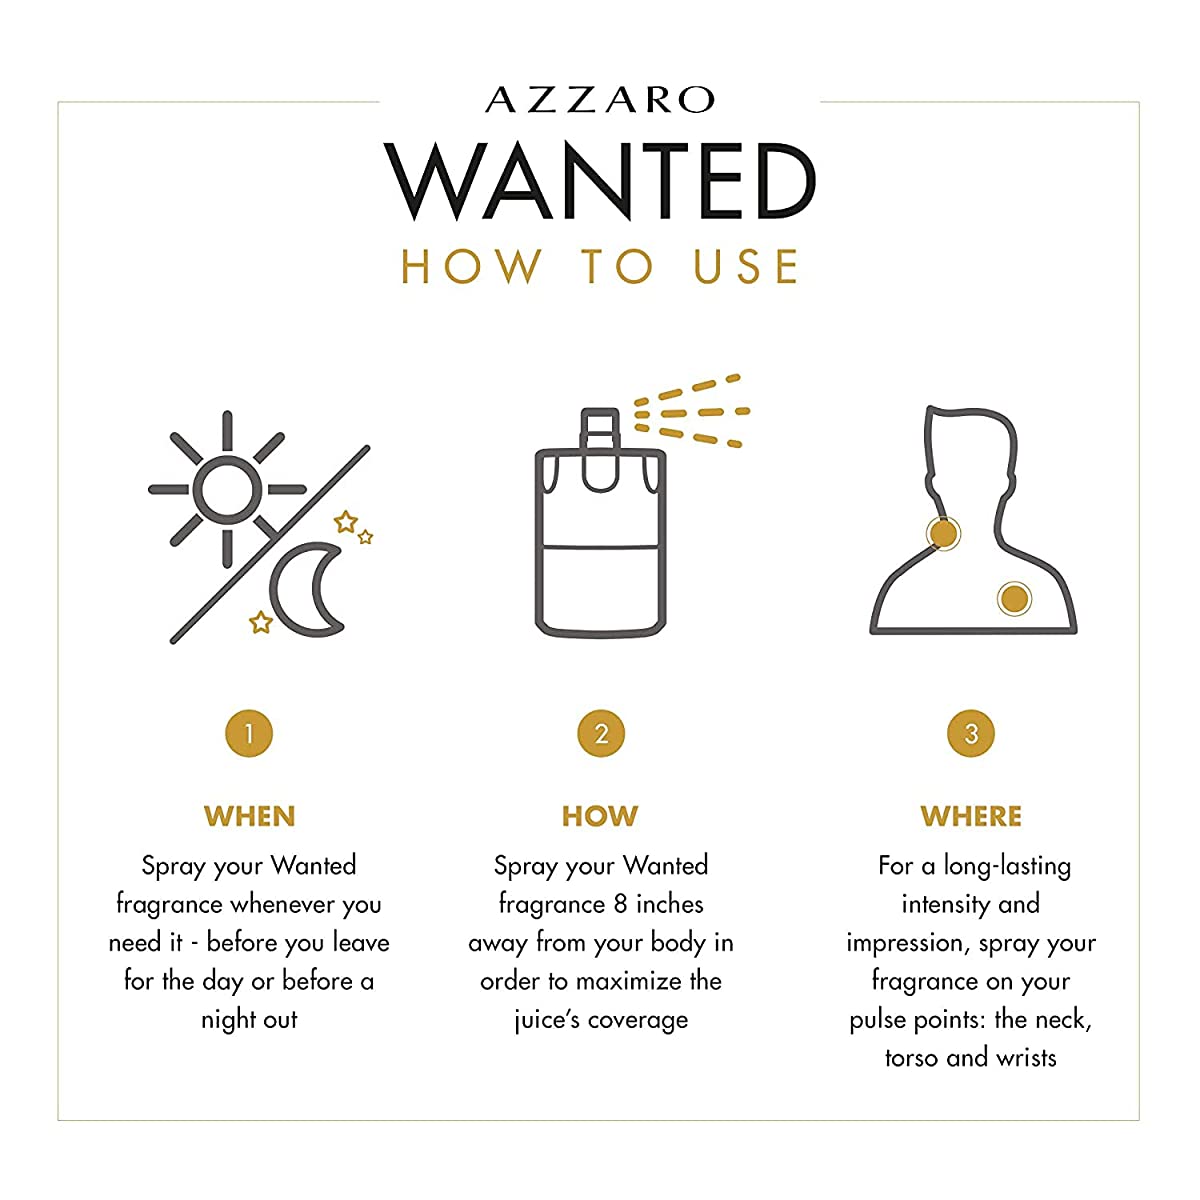 Azzaro Wanted by Night Eau De Parfum for Men (100 ml) Azzaro